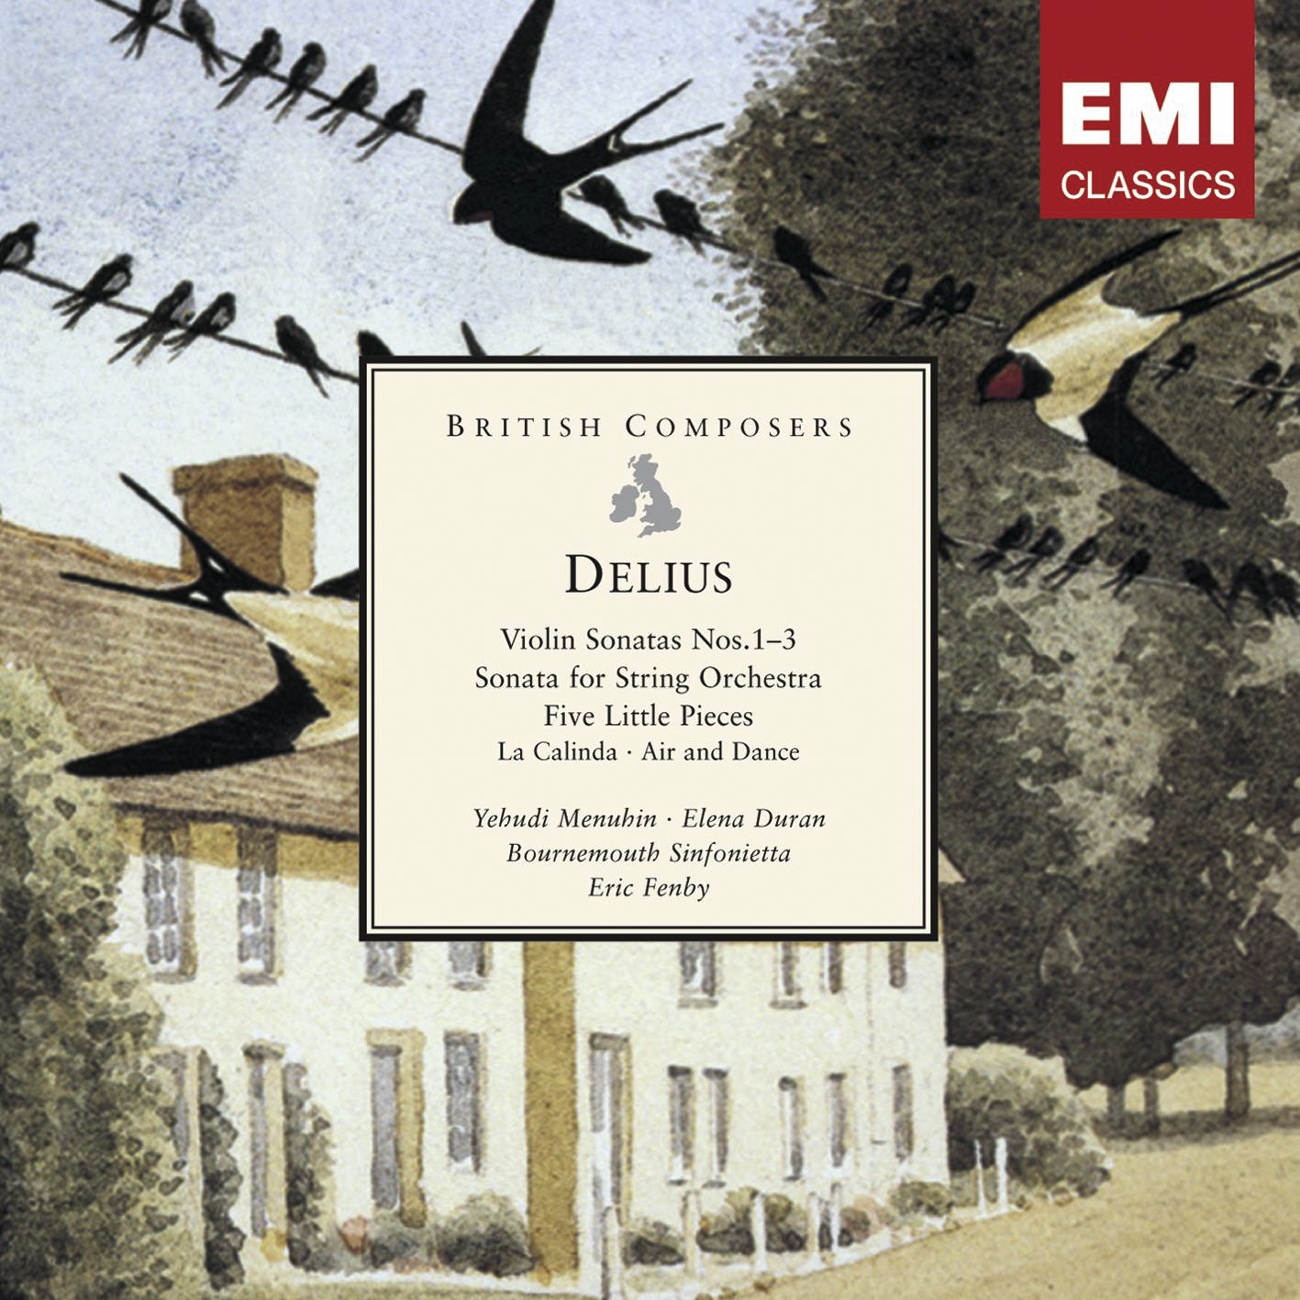 Delius: Violin Sonatas Nos.1-3, Sonata for String Orchestra etc